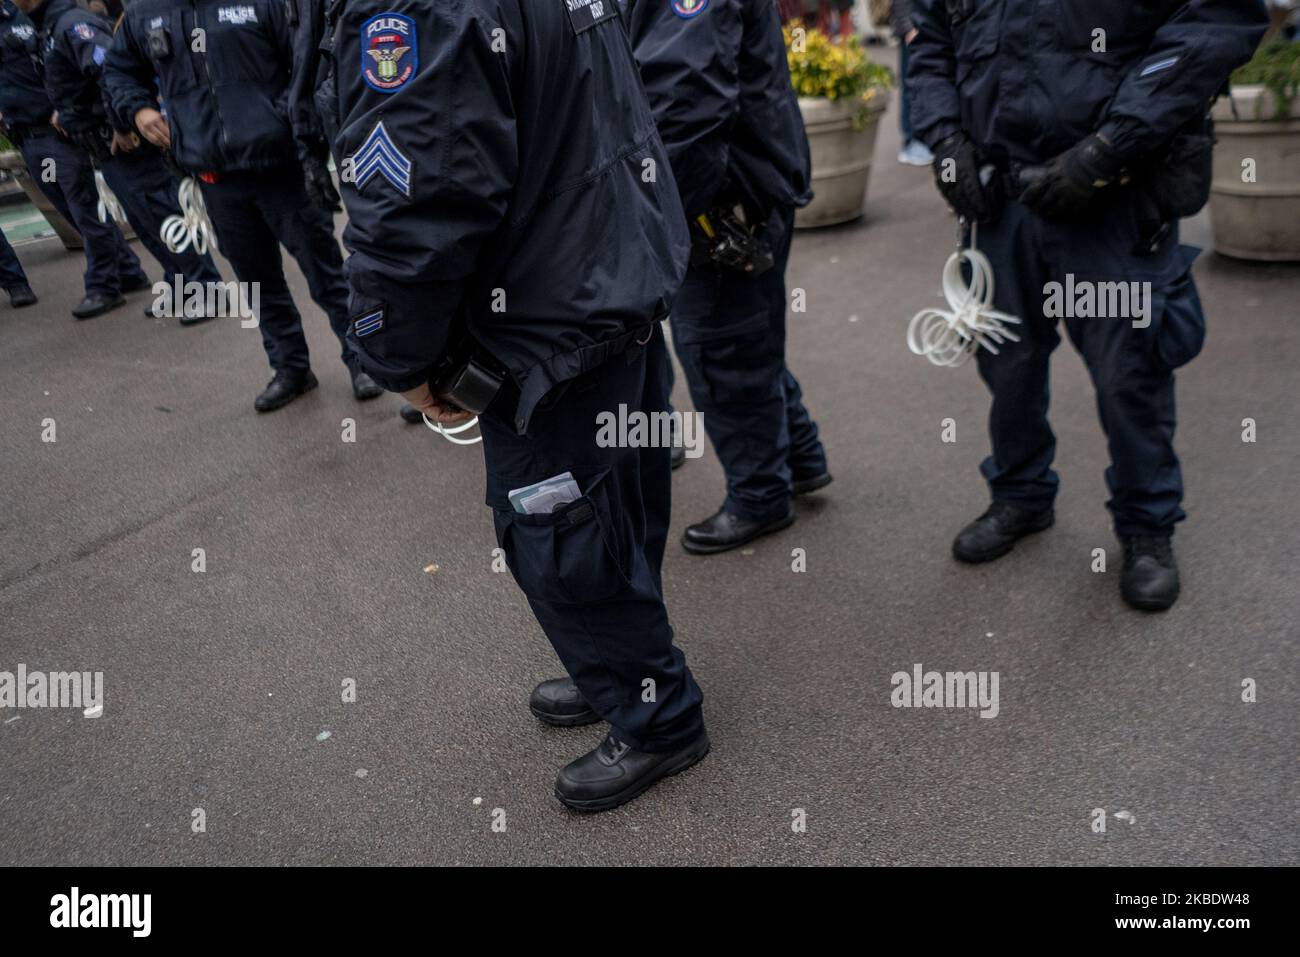 Polizeibeamte tragen während der Anti-Krieg-Iran-Kundgebung am Times Square am 4. Januar 2020 in New York, NY, Reißverschlüsse. Qassem Soleimani, der Chef der iranischen Streitkräfte, wurde am Freitag bei einem US-Luftangriff in Bagdad getötet. (Foto von Erin Lefevre/NurPhoto) Stockfoto